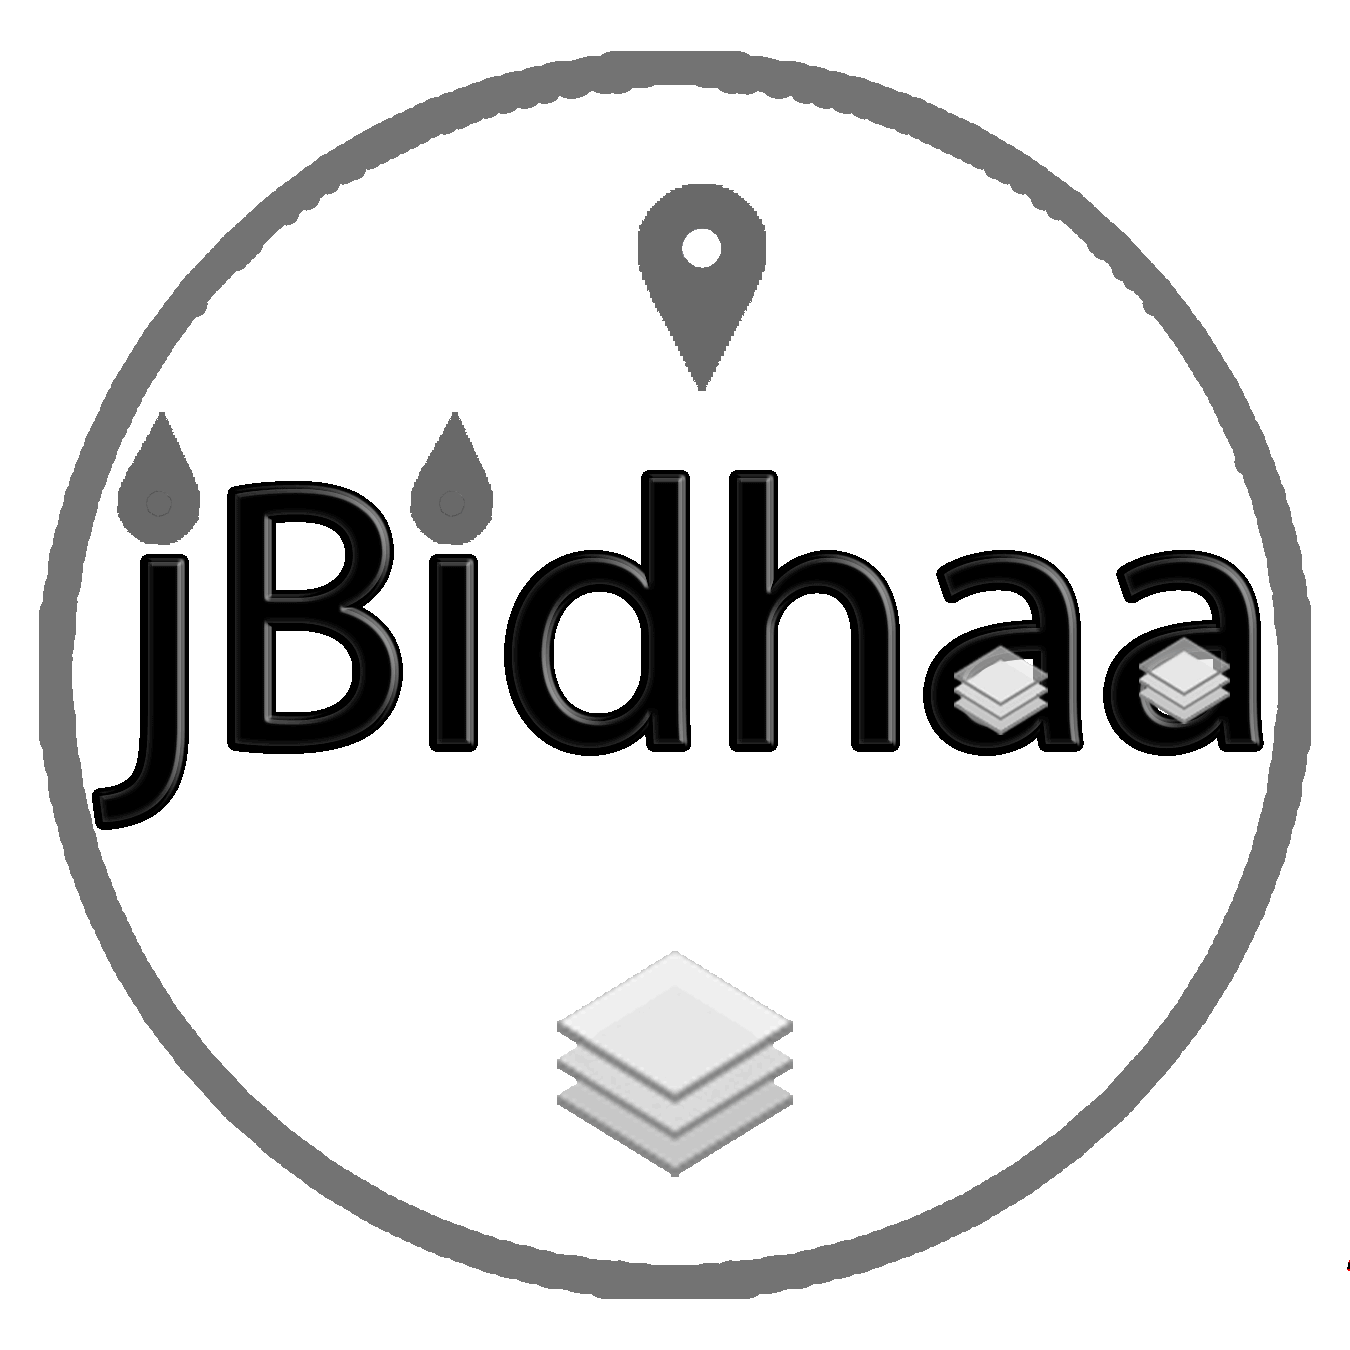 jBidhaa Logo